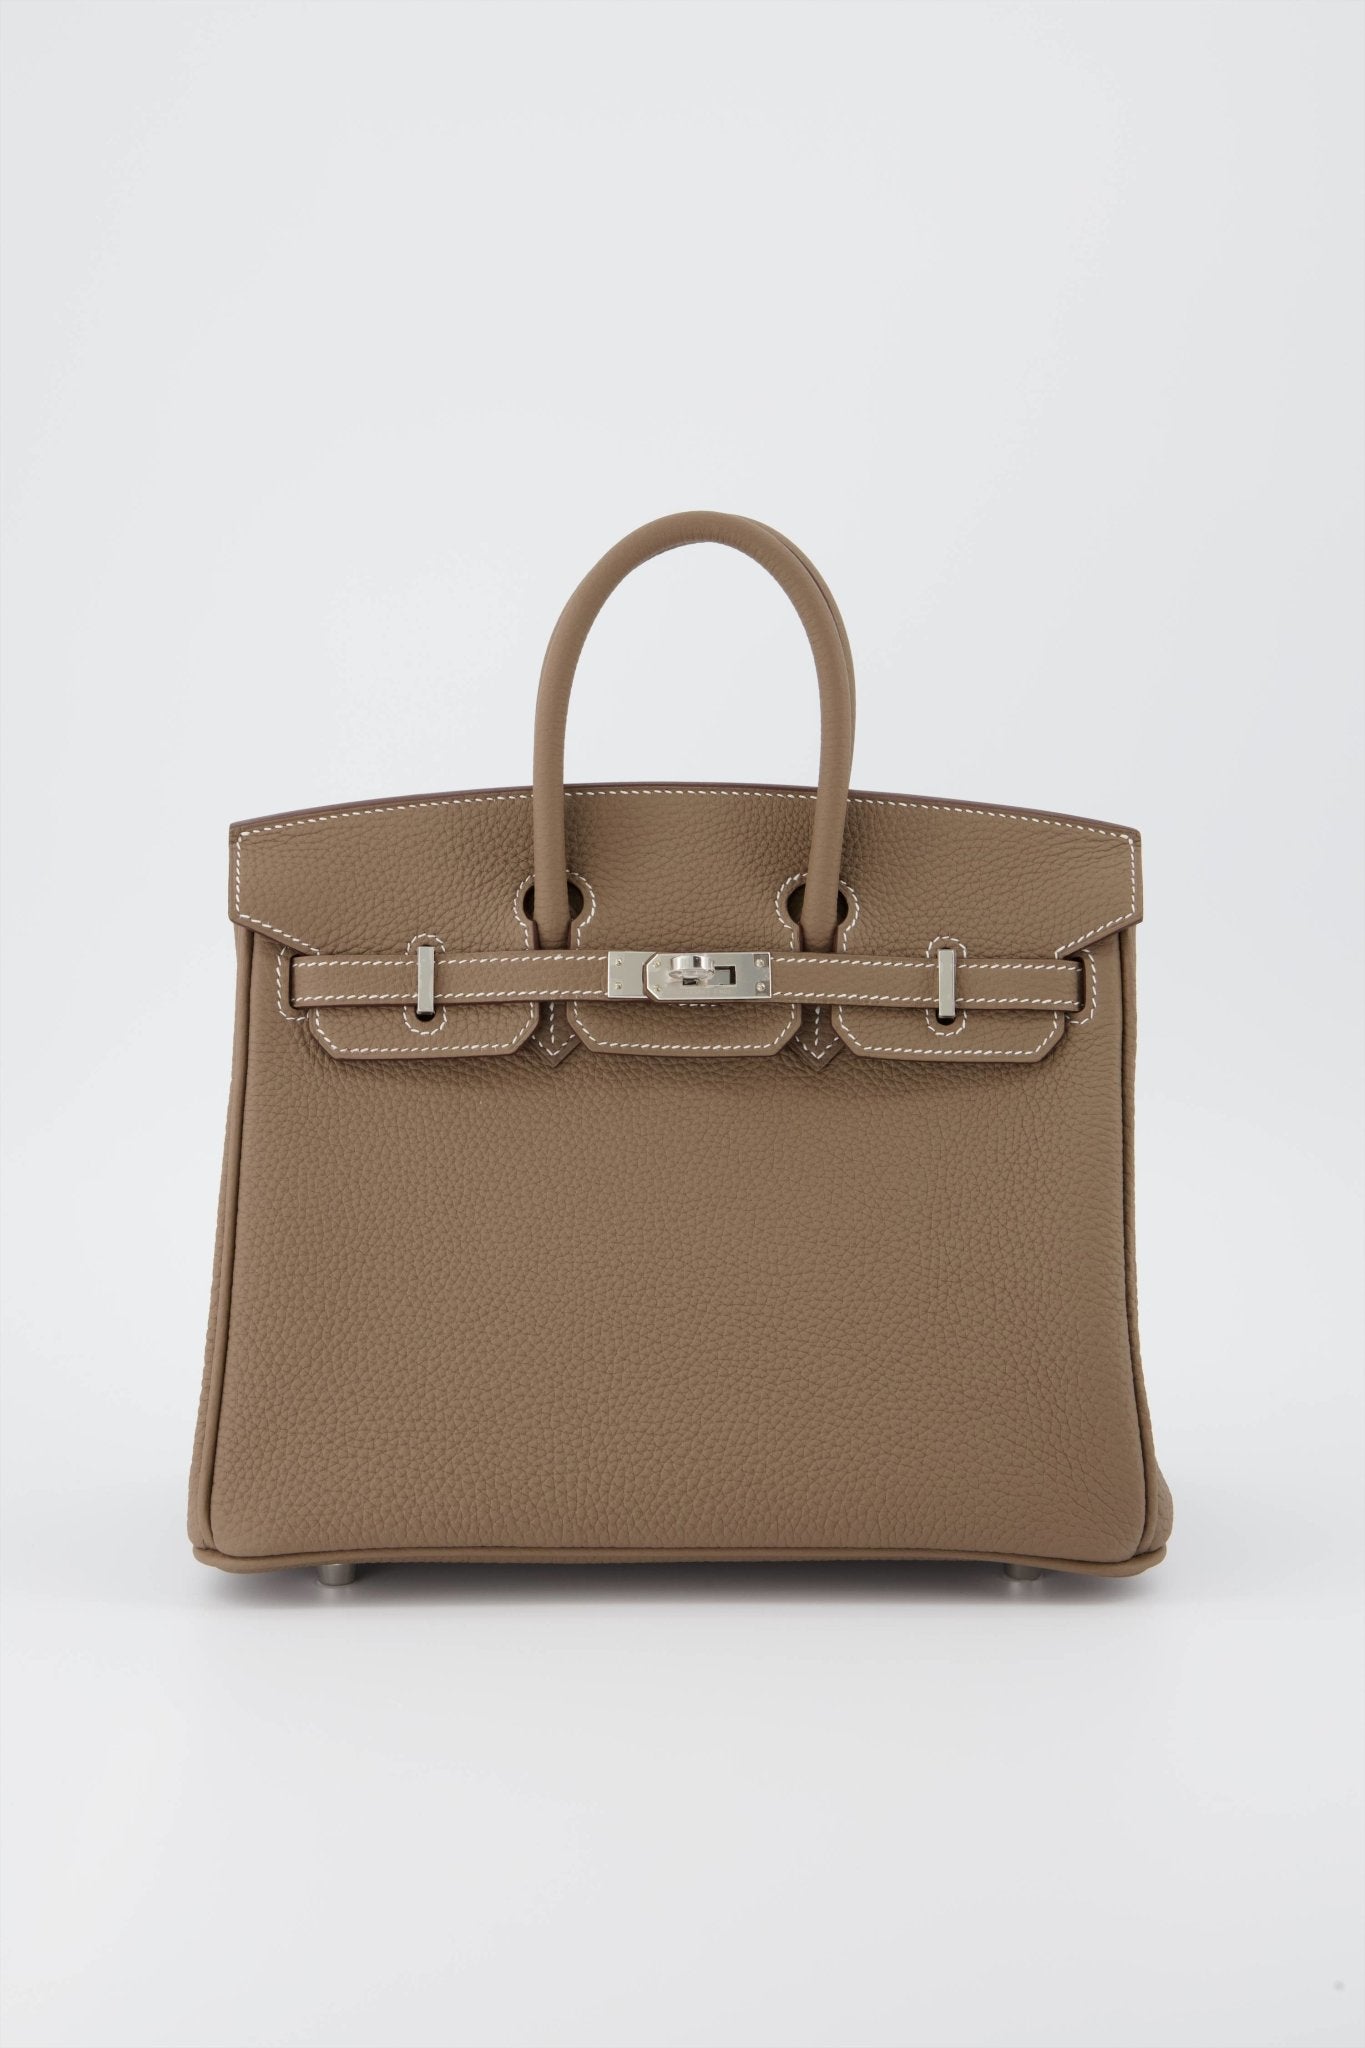 Hermes Birkin 25 Etoupe Handbag